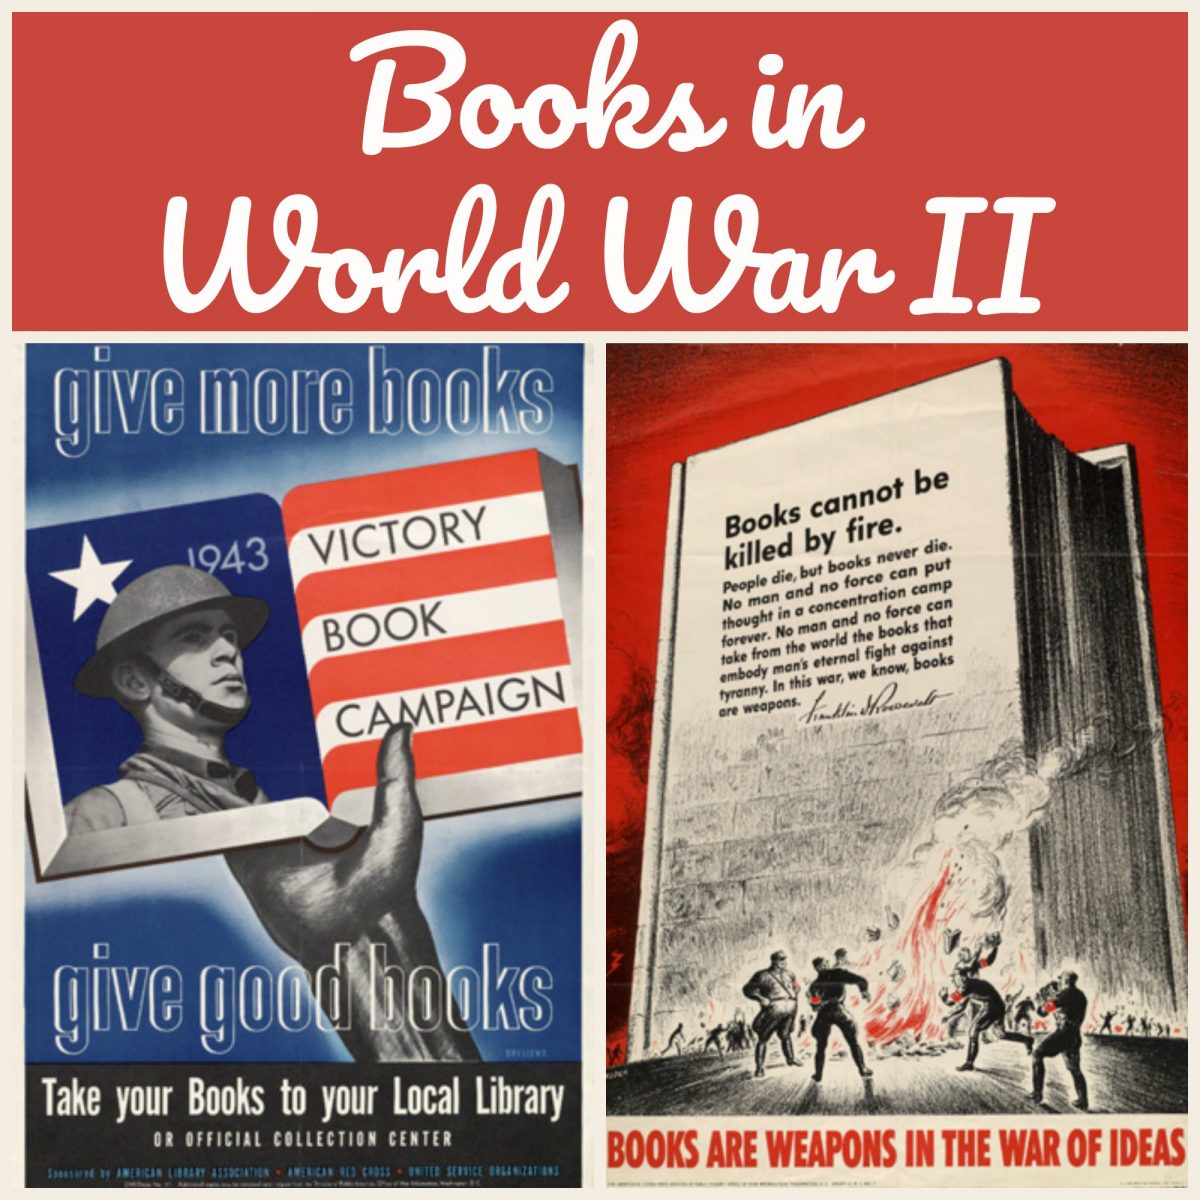 Books in World War II, on Sarah Sundin's blog